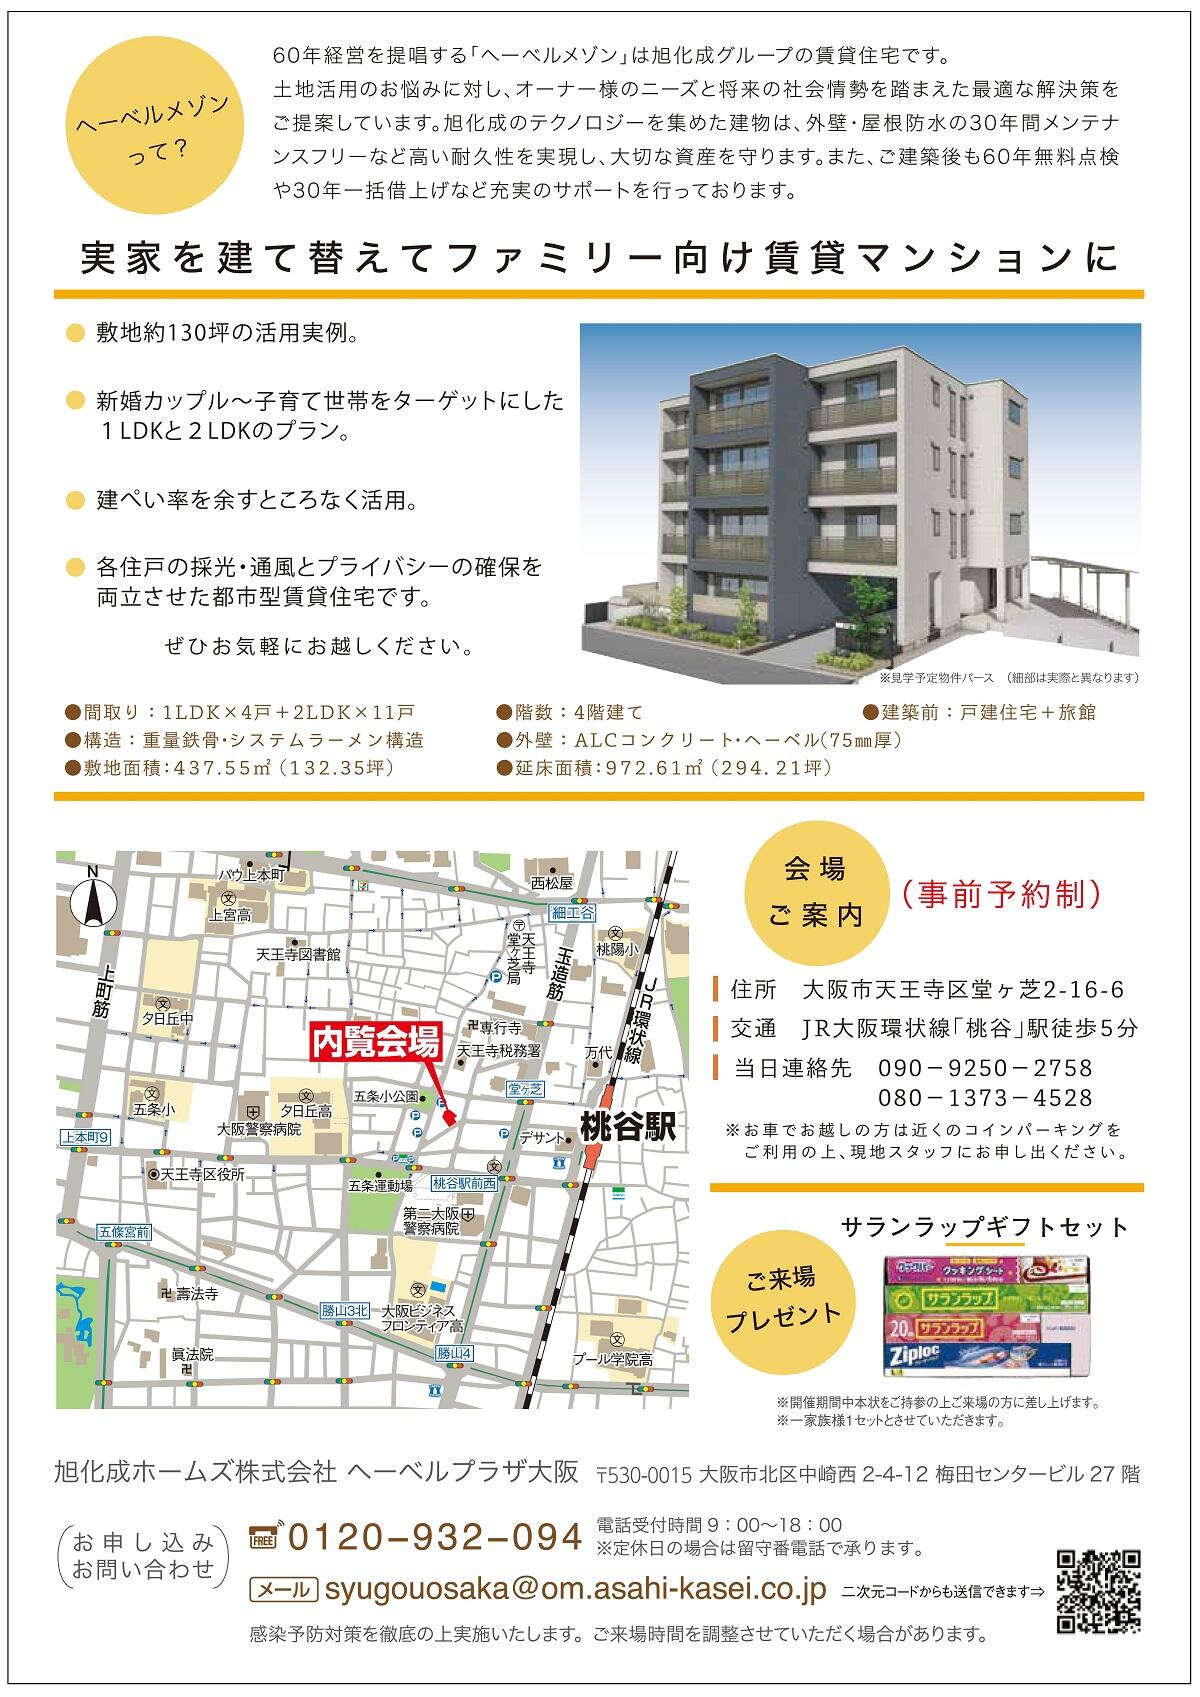 https://www.asahi-kasei.co.jp/maison/hebelplaza/blog/18/osaka/item/2020/20201015-2.jpg